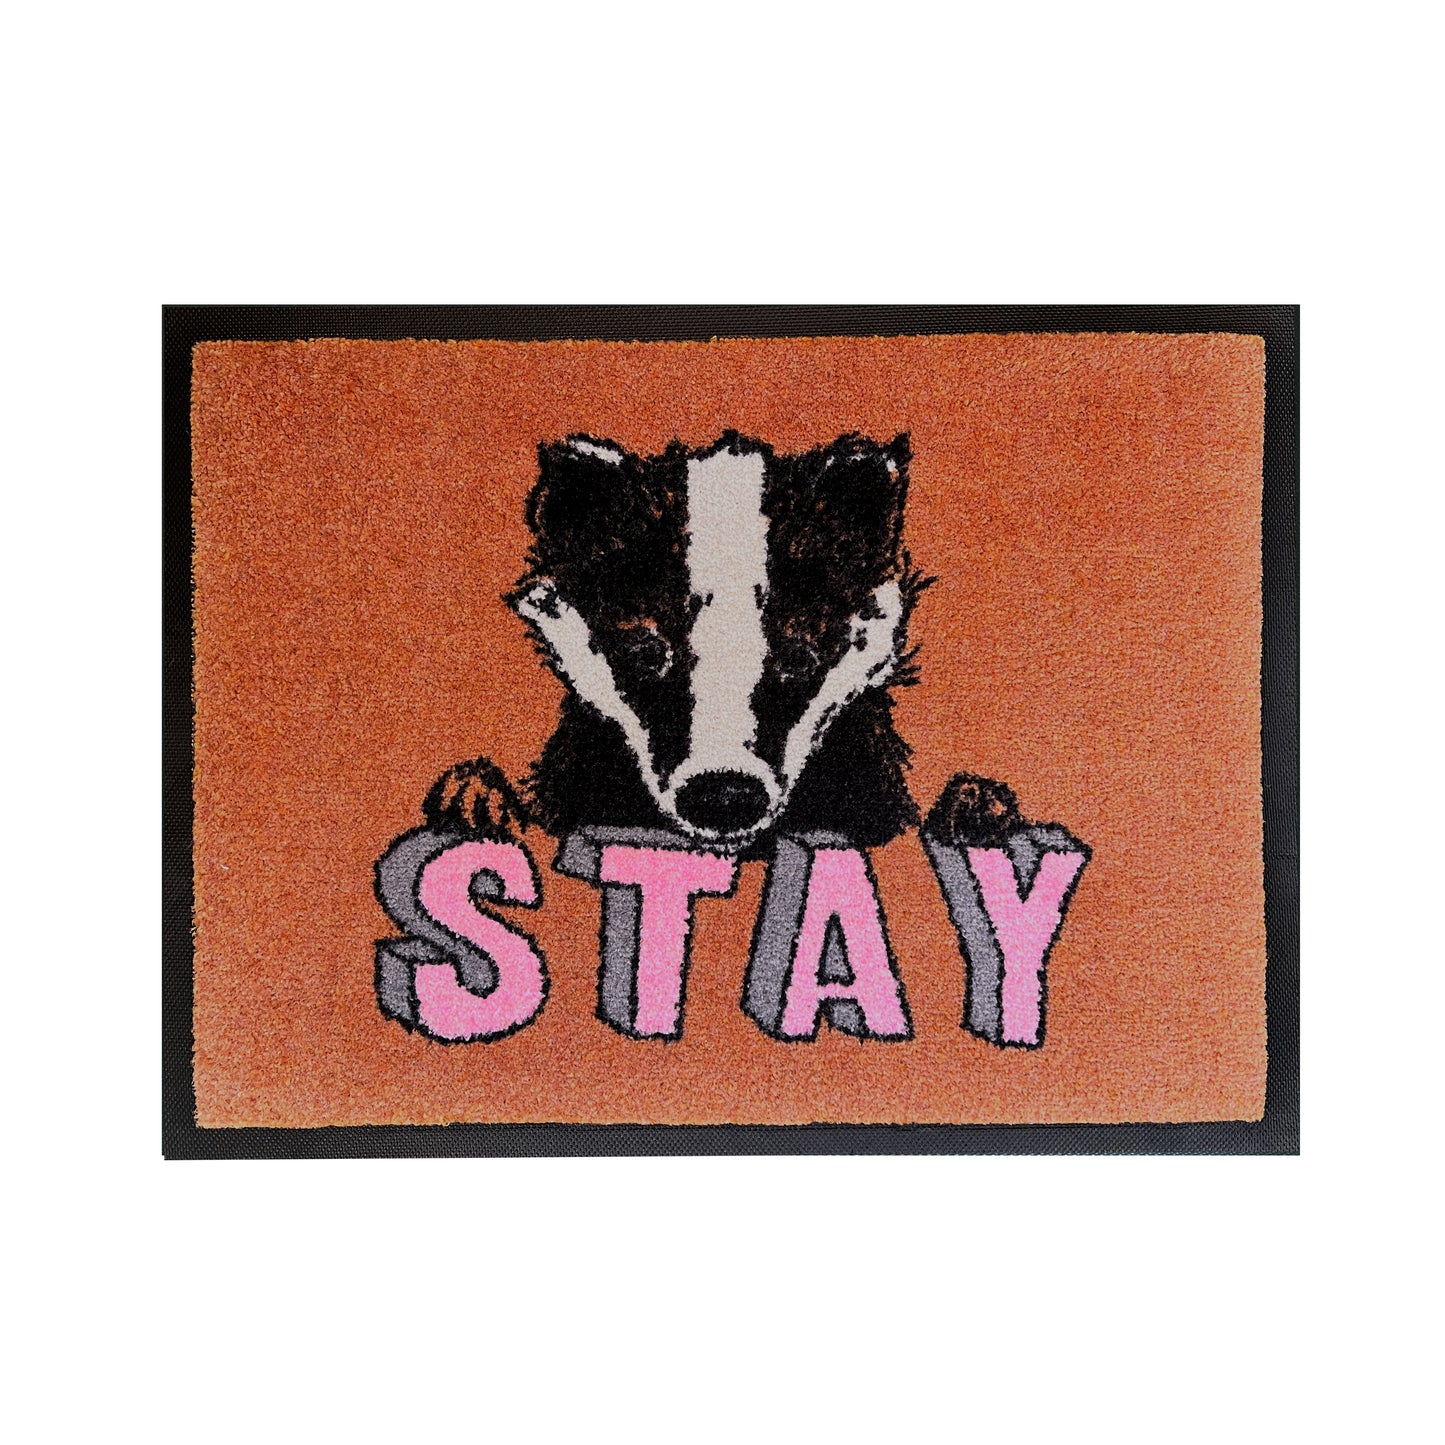 'Stay Badger' Welcome Door Mat